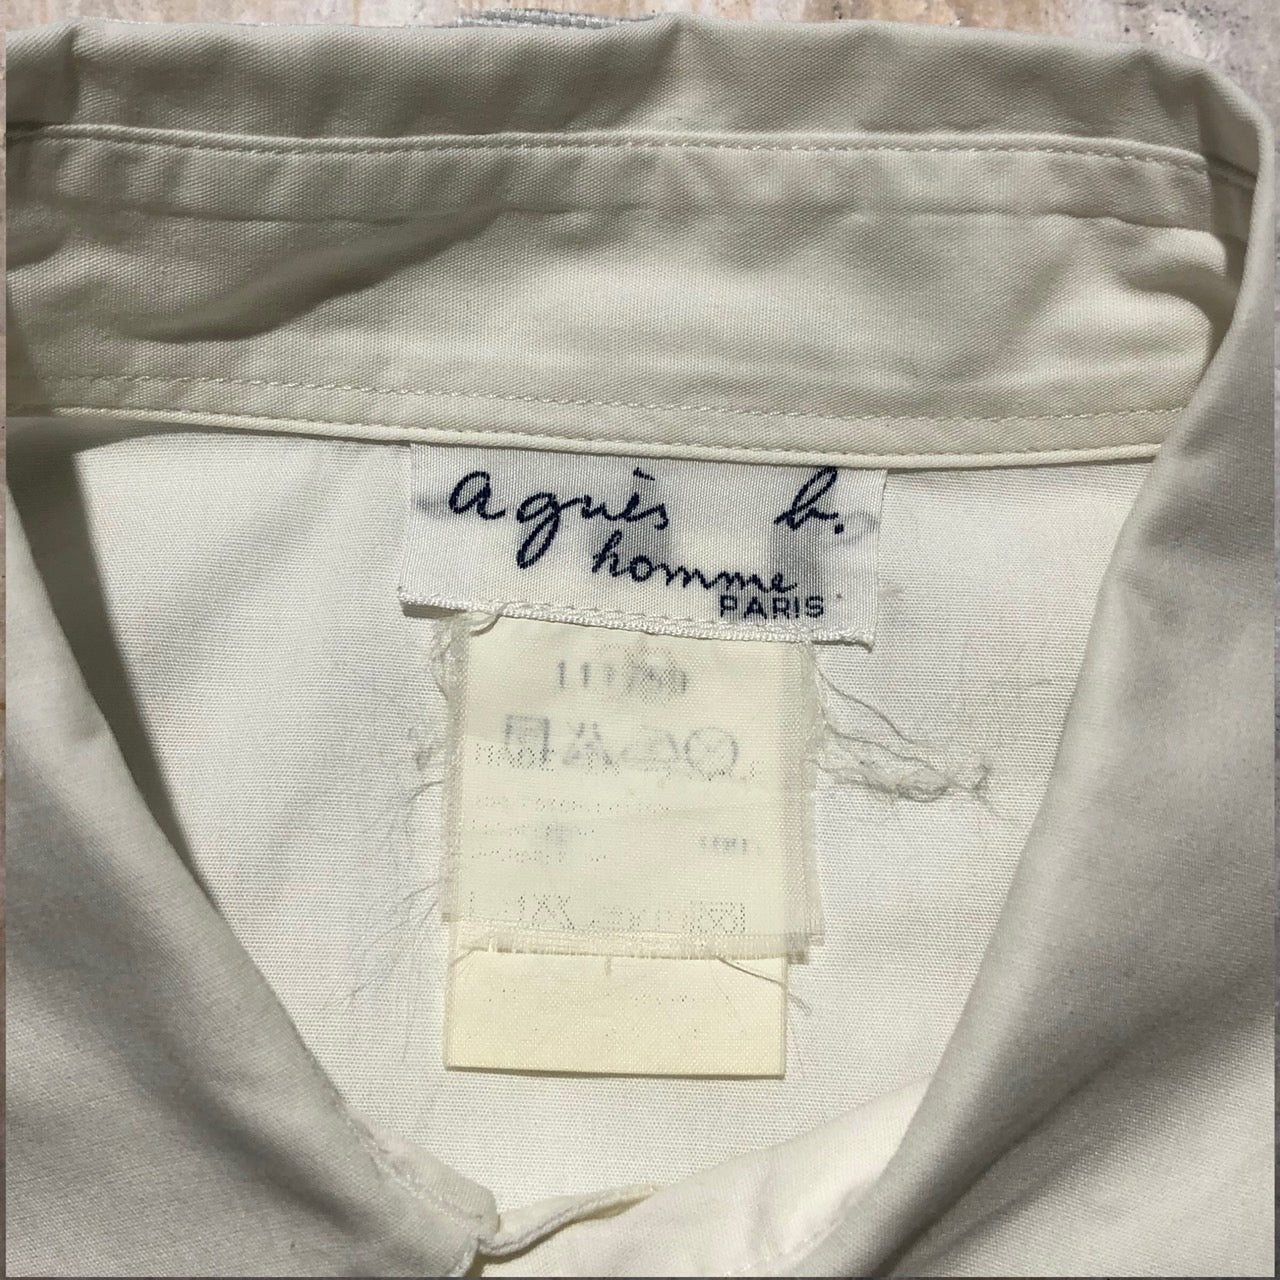 agnes b. homme(アニエスベーオム) 90's ROBERT FILLIOU ARTプリントシャツ 表記なし(M程度) ホワイト 96’s